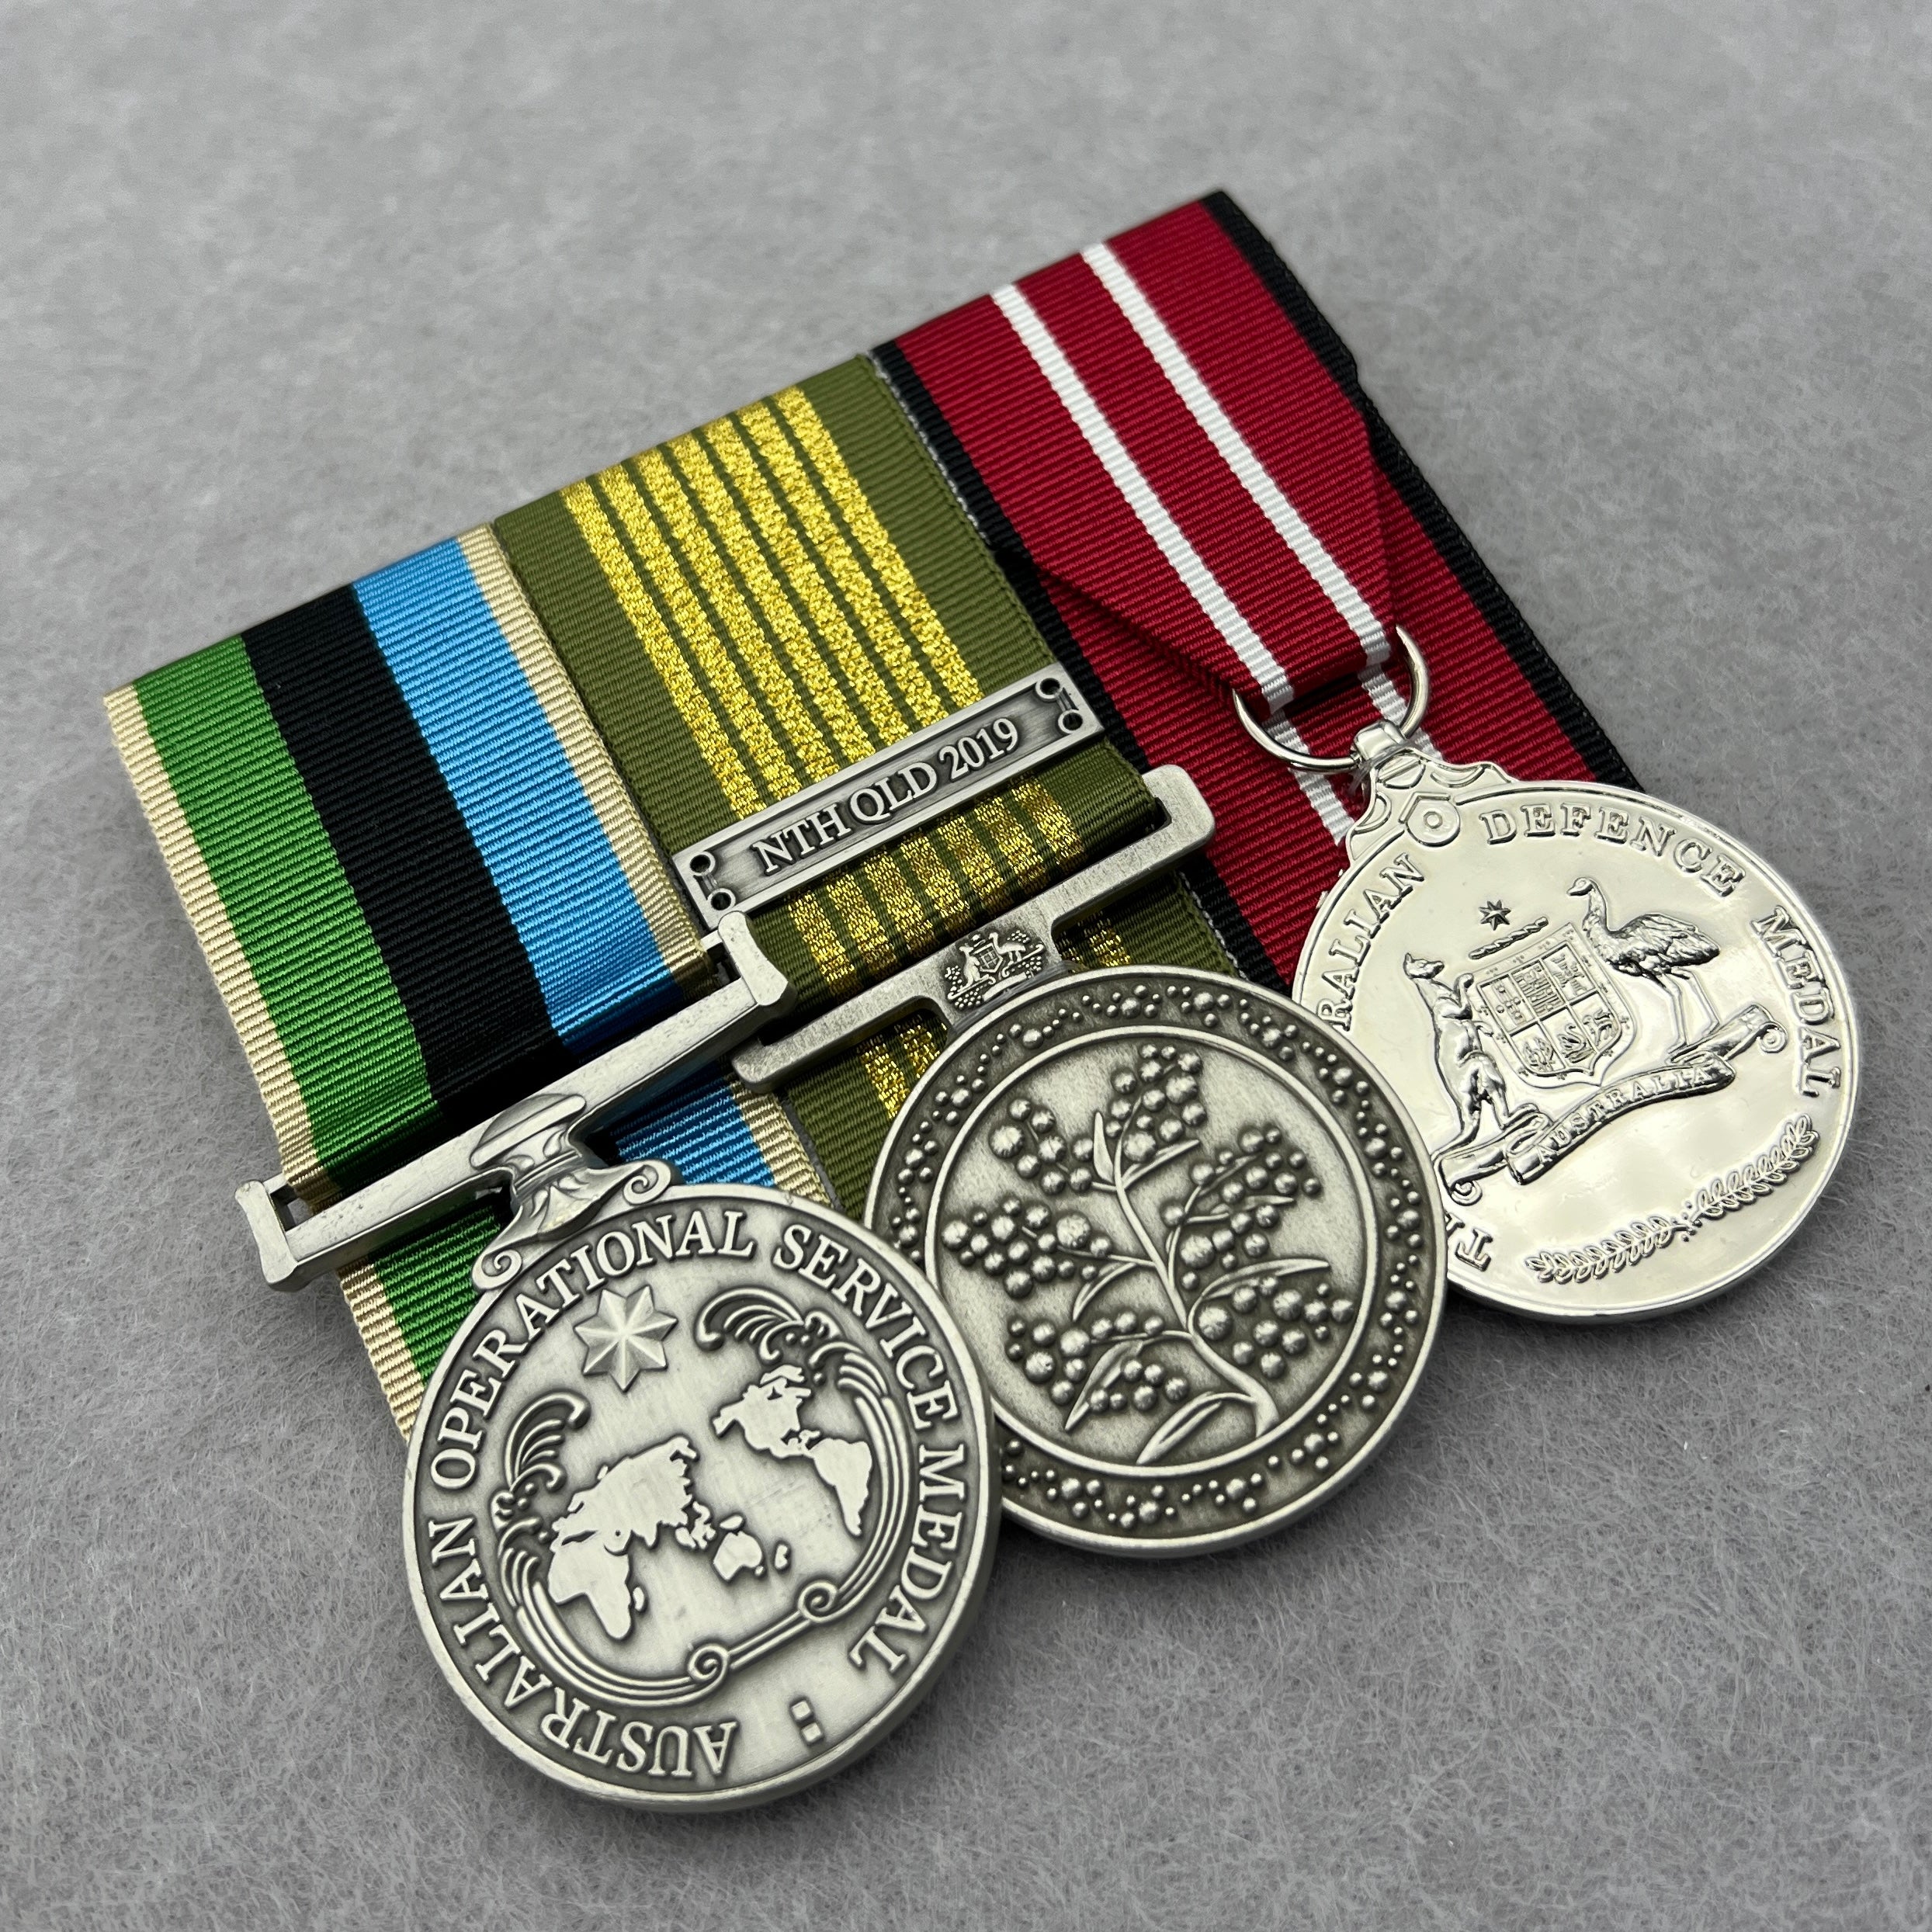 AOSM - GME / NEM / Service Trio - Foxhole Medals